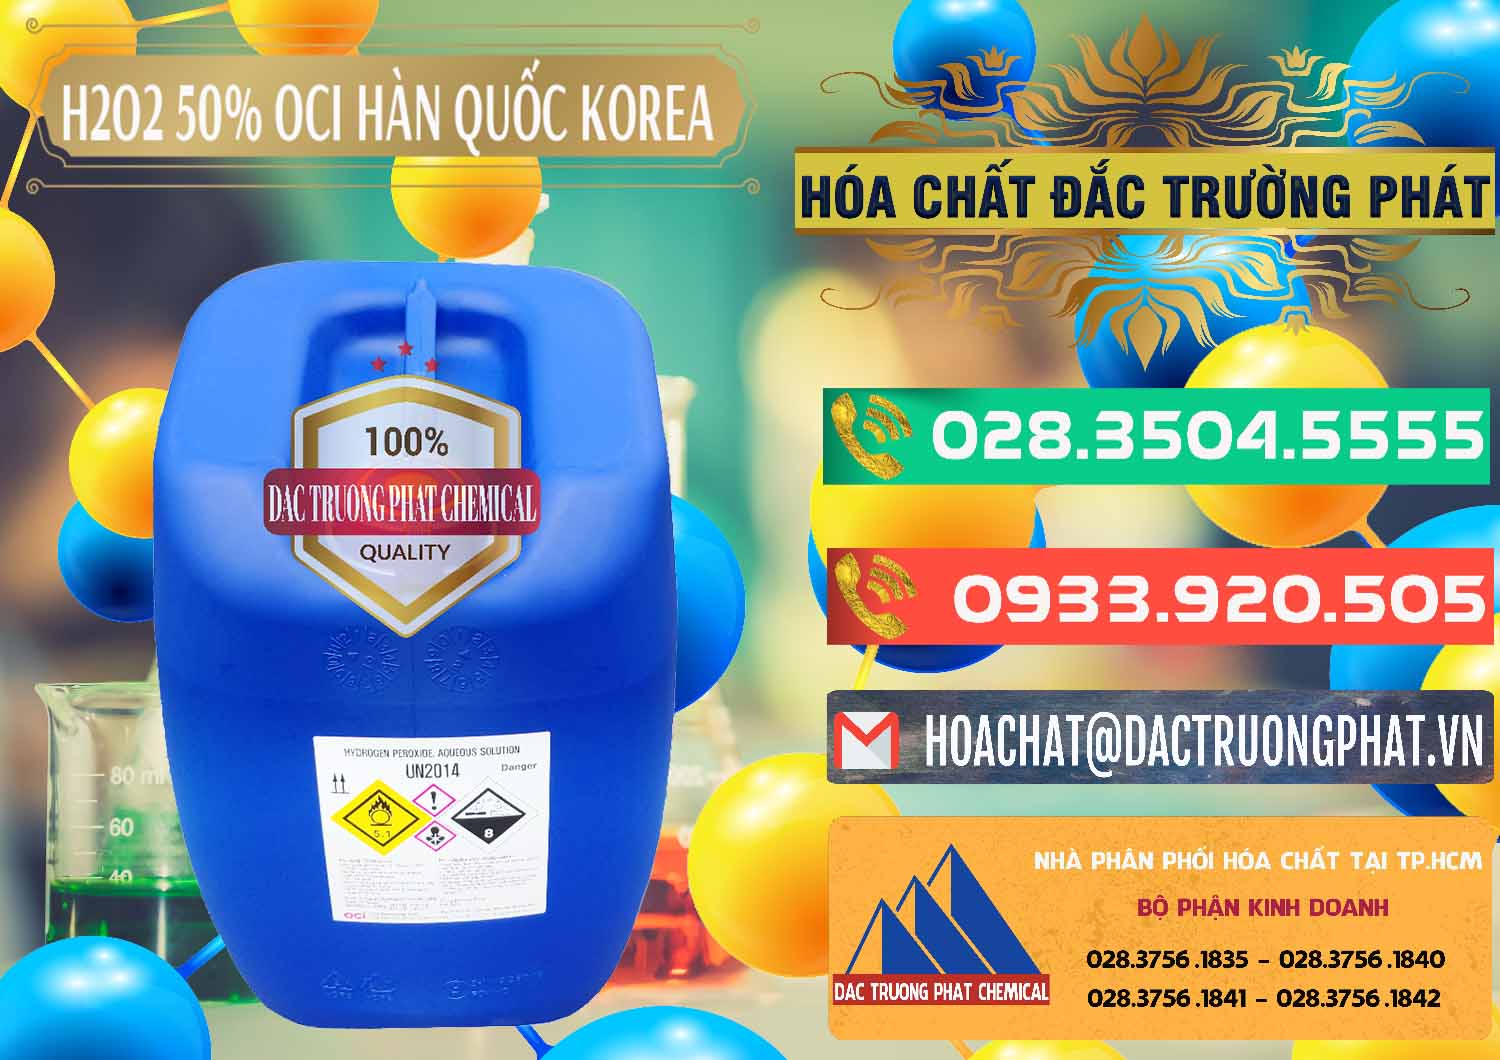 Nơi chuyên phân phối & bán H2O2 - Hydrogen Peroxide 50% OCI Hàn Quốc Korea - 0075 - Đơn vị chuyên kinh doanh _ cung cấp hóa chất tại TP.HCM - congtyhoachat.com.vn